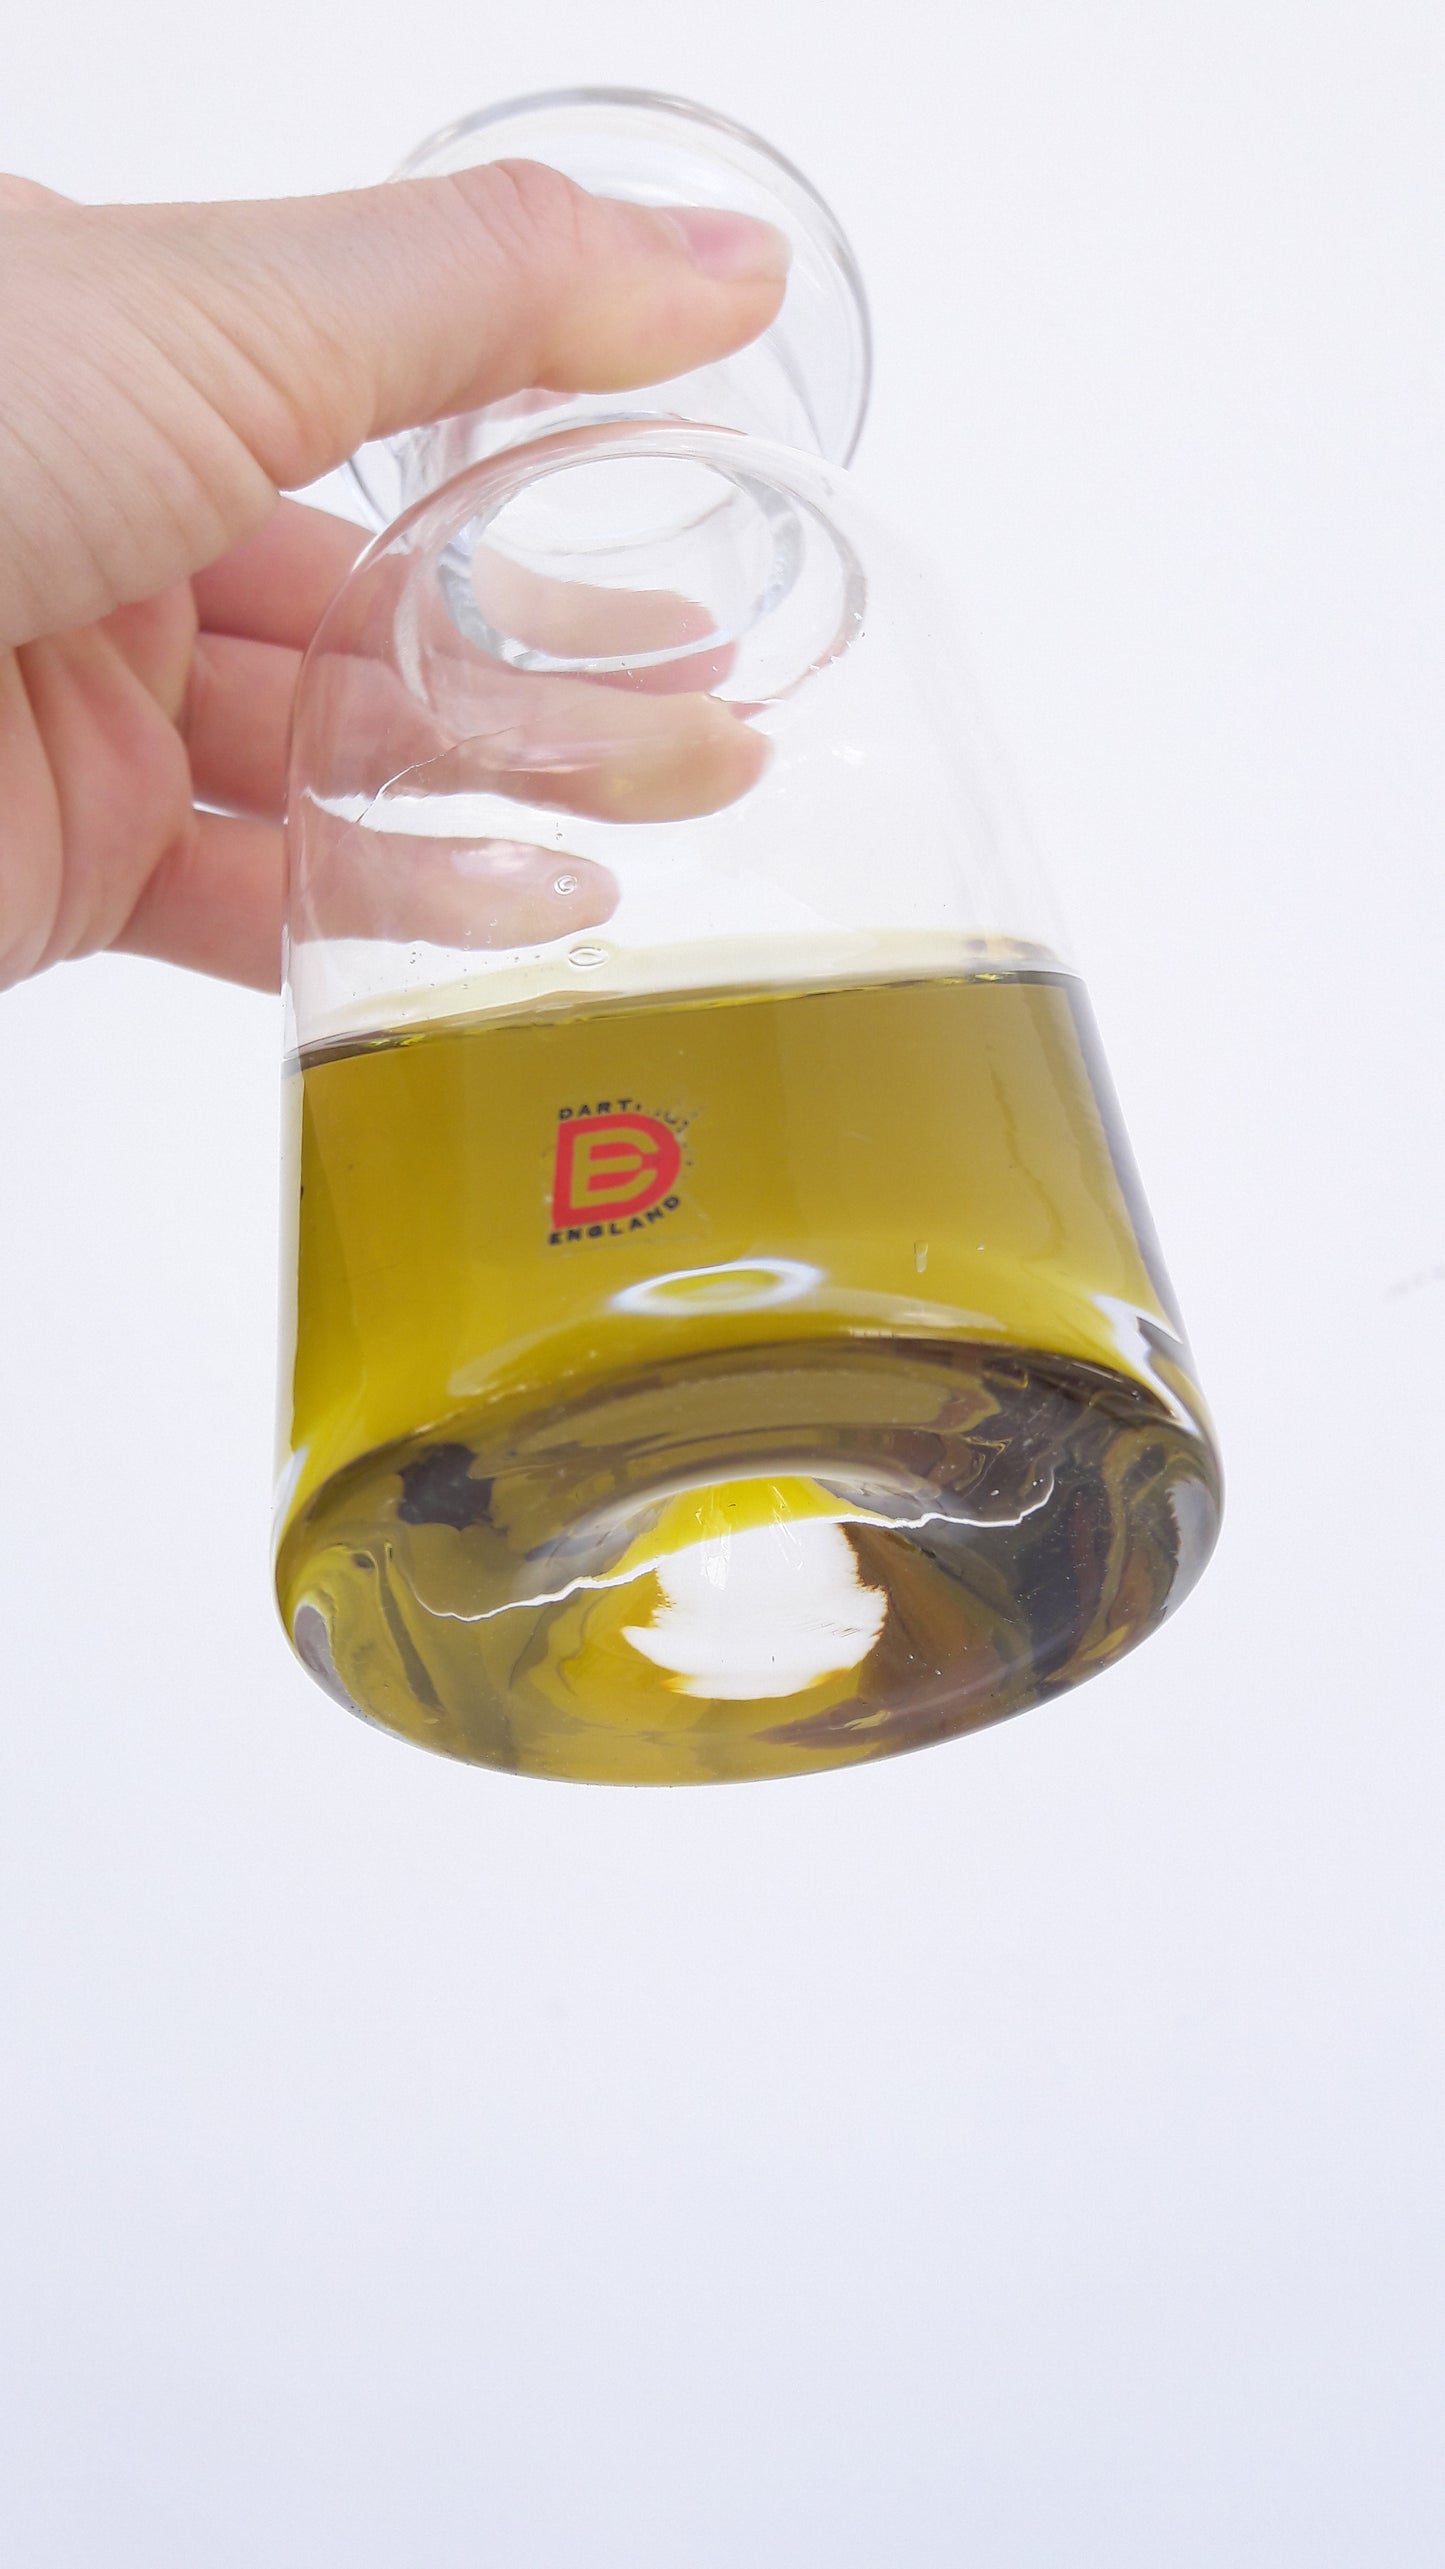 Vintage Dartington Crystal Glass Oil or Vinegar Decanter